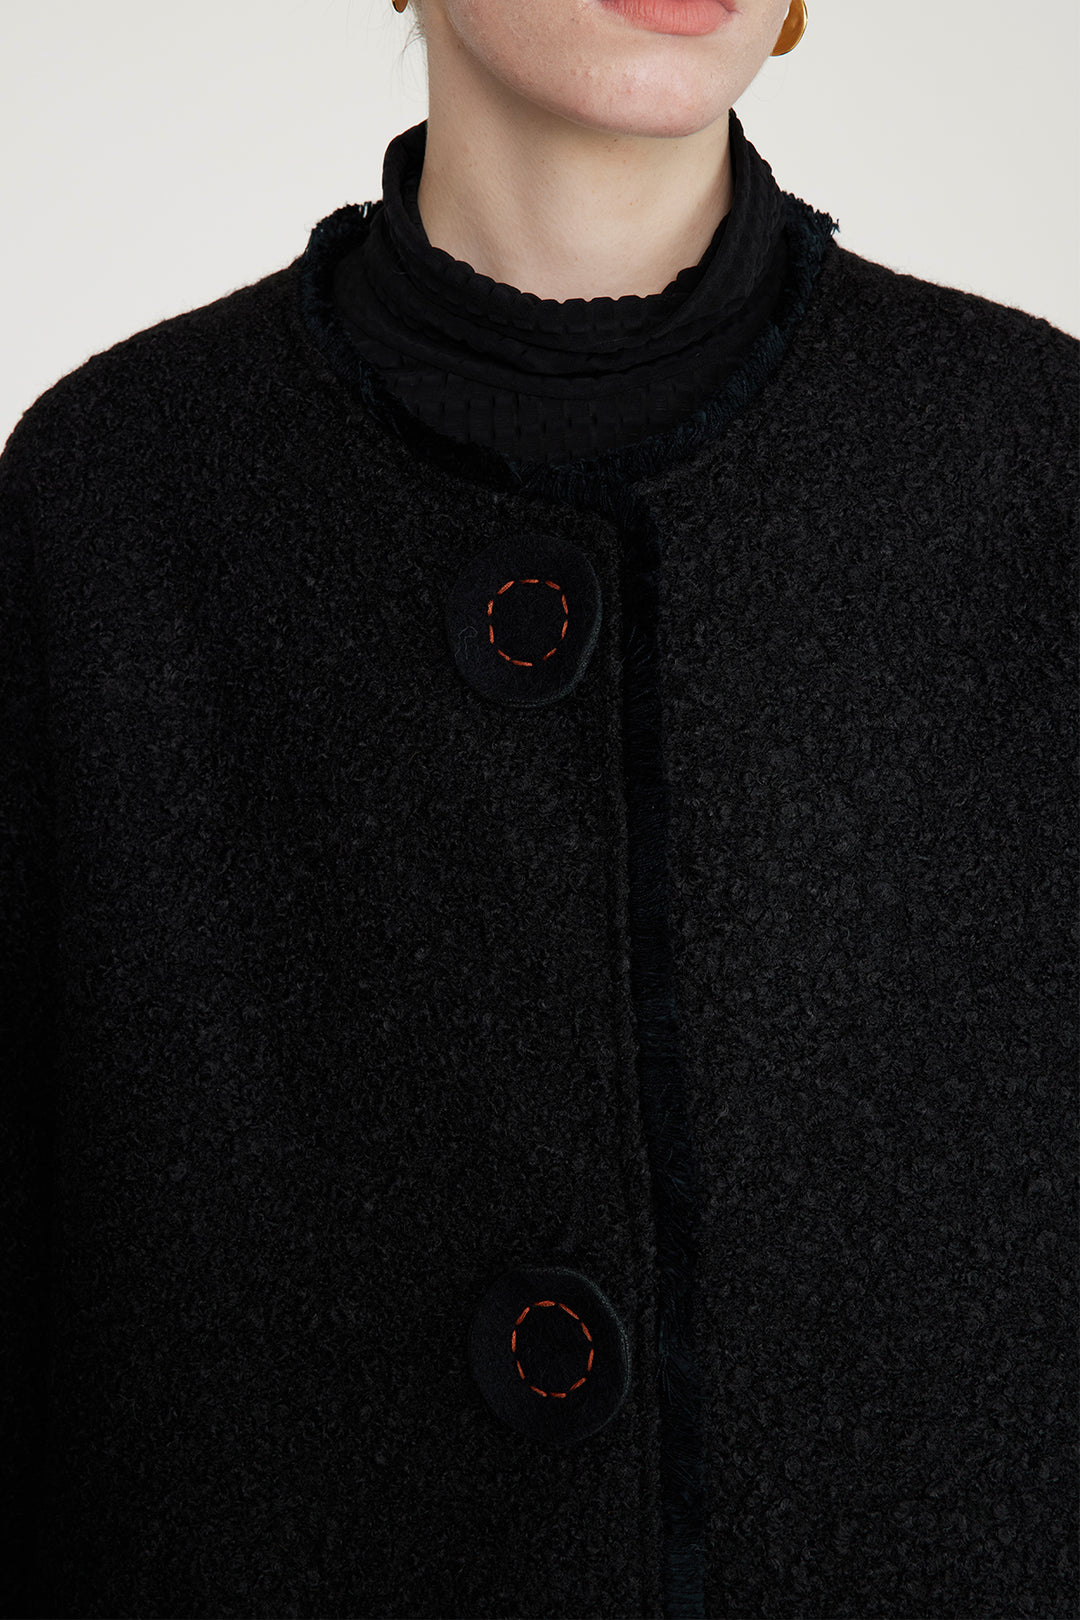 Abrigo de lana con botones bordados a mano